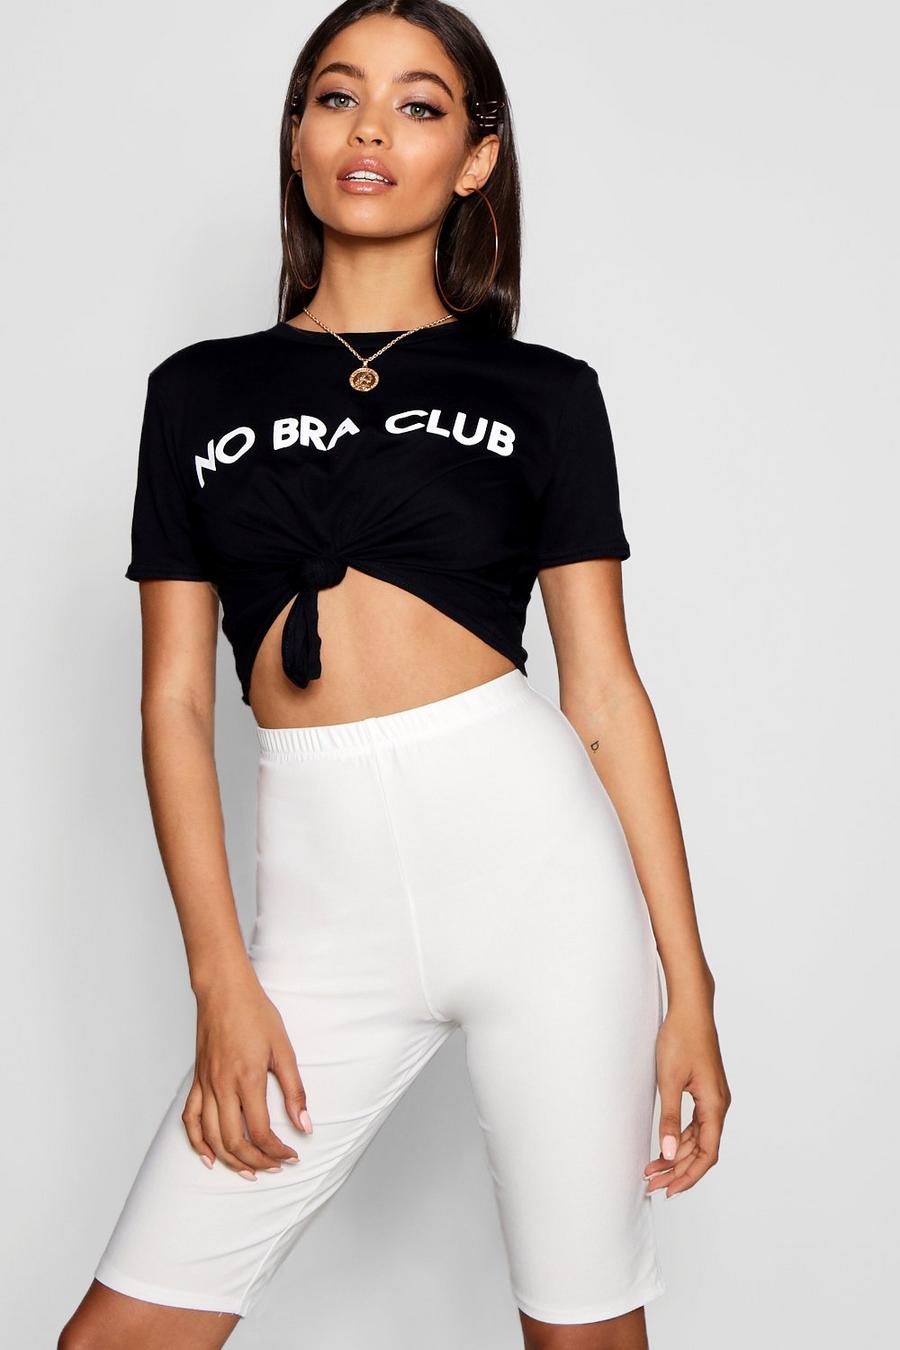 No Bra Club Shirt